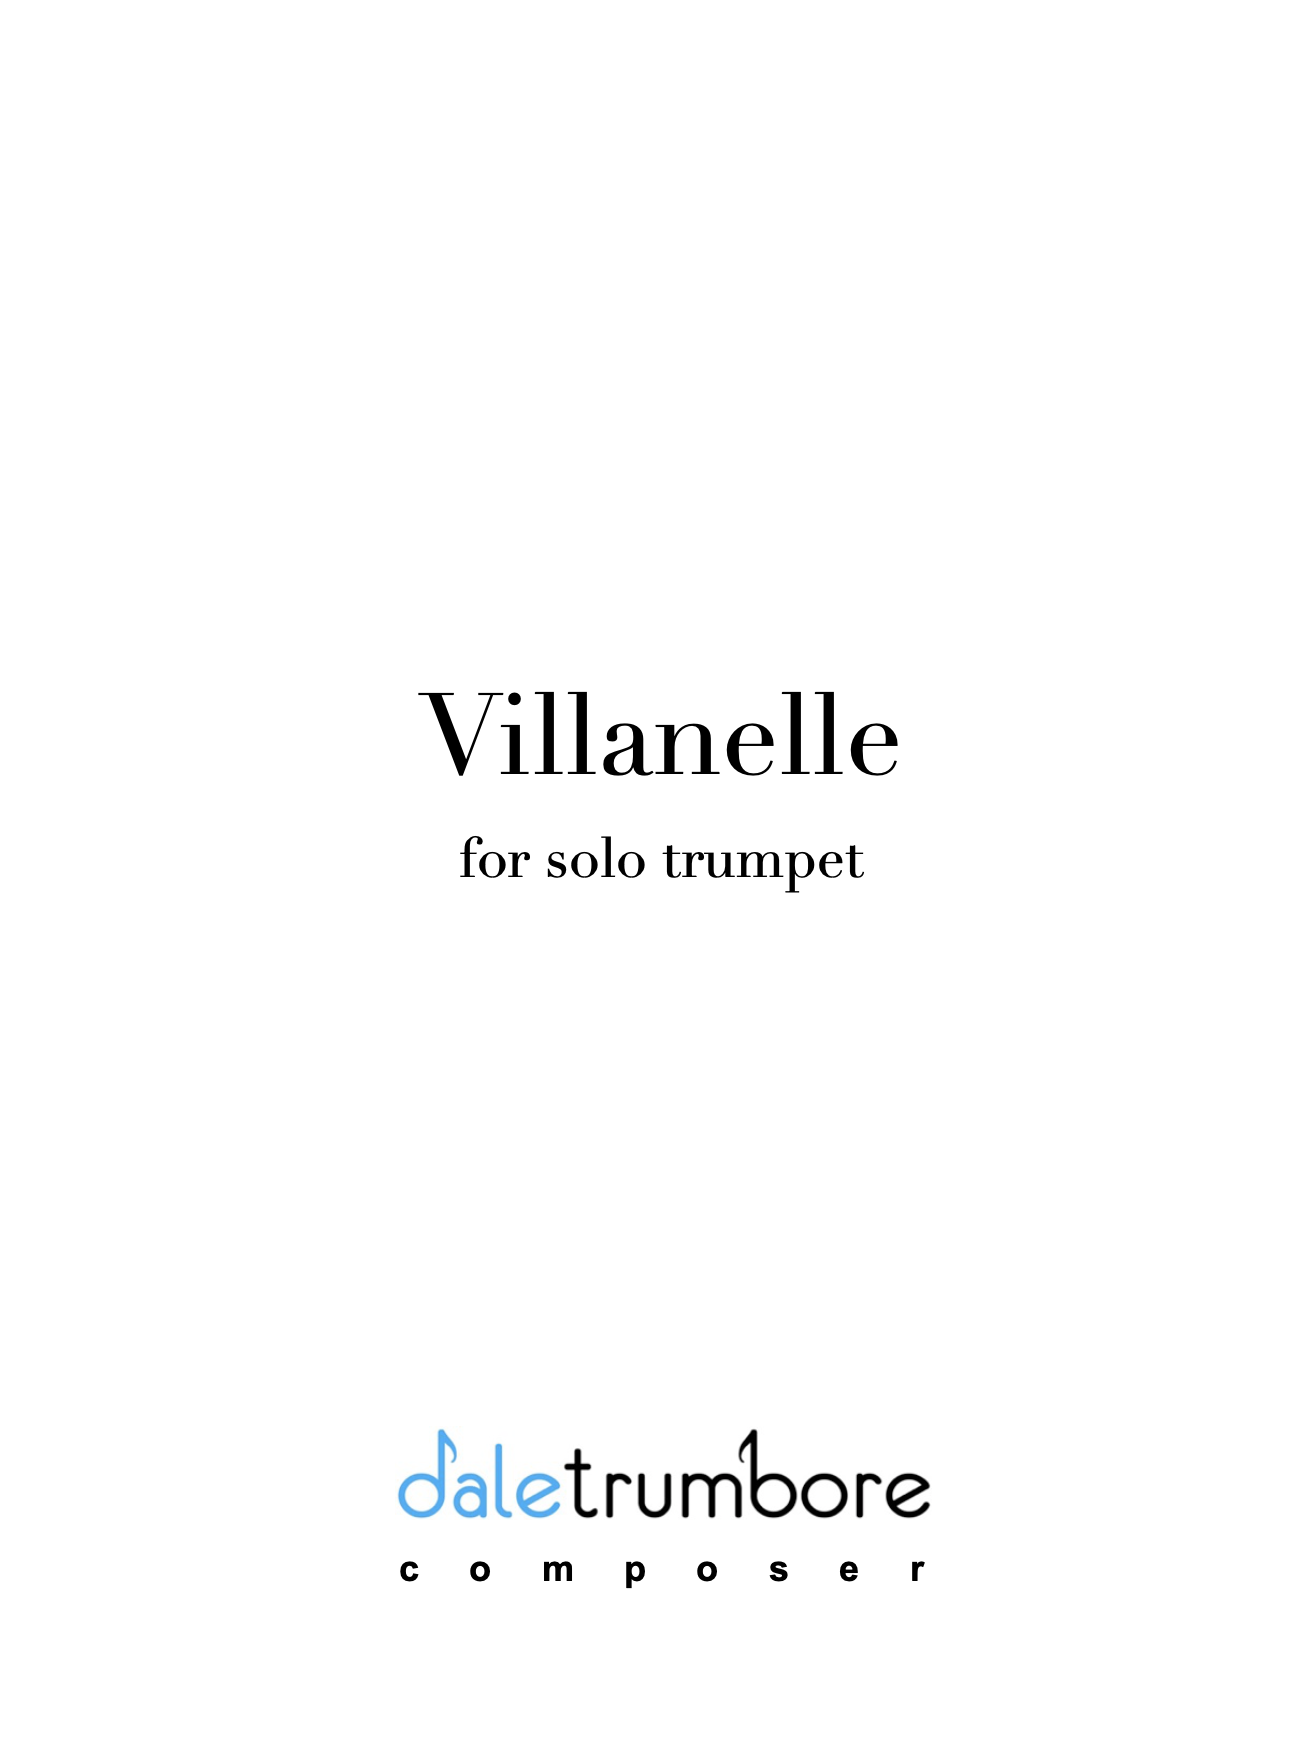 Villanelle by Dale Trumbore